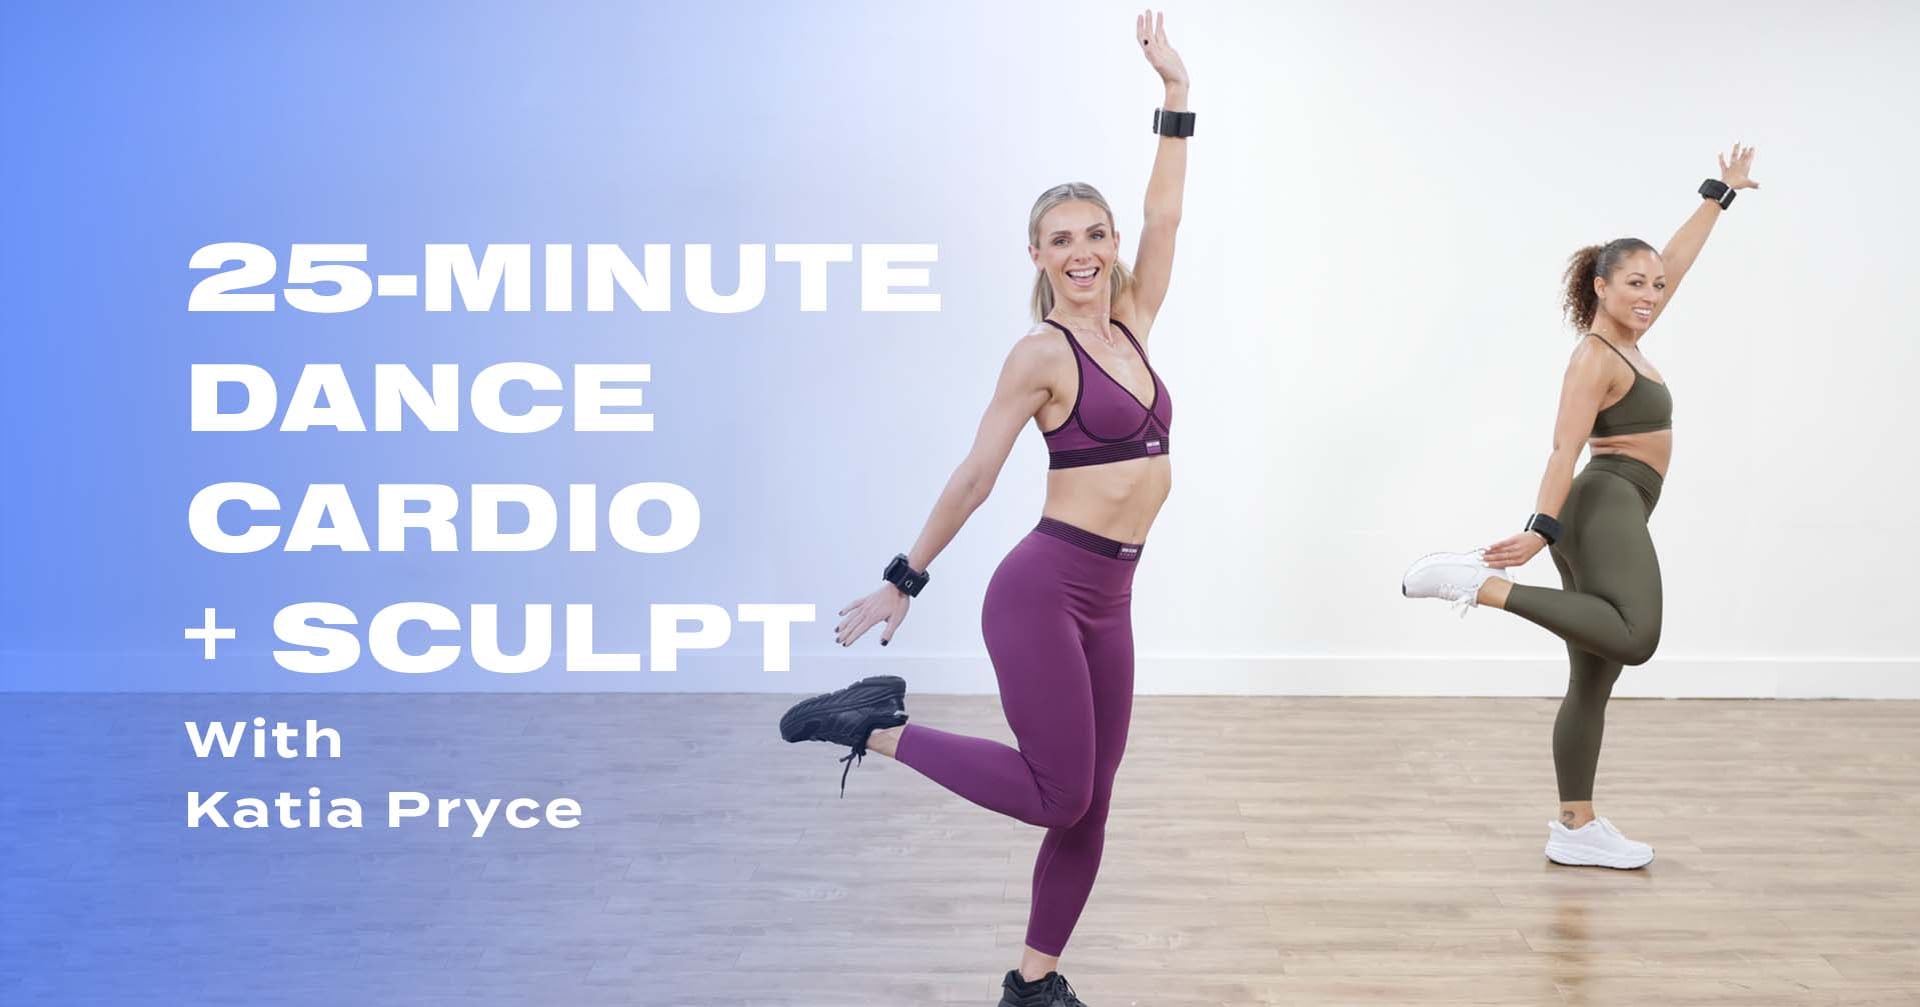 25-Minute Cardio Dance + Sculpt Workout